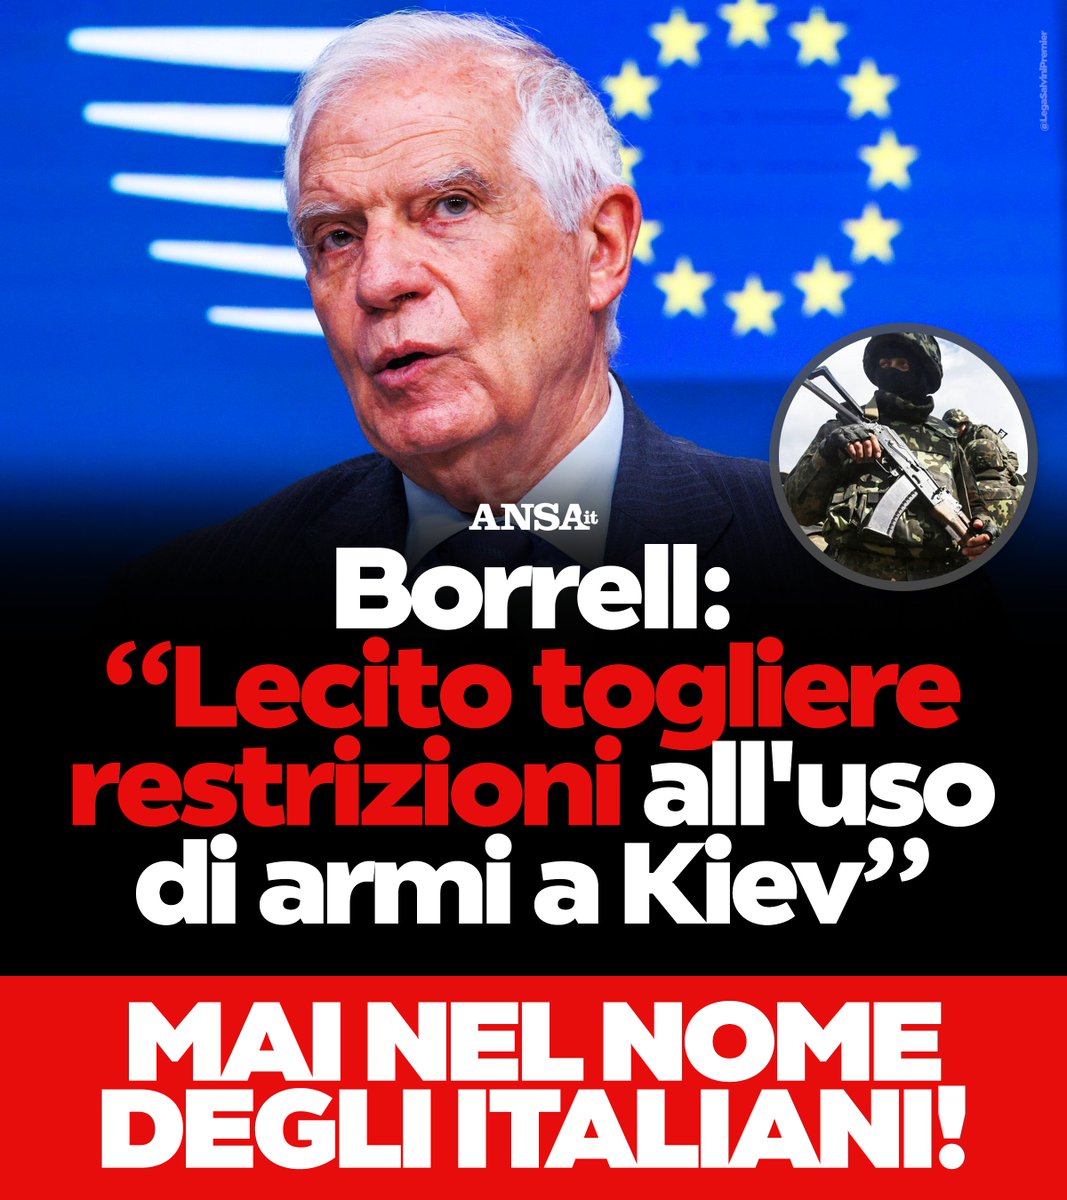 Trovo farneticanti e gravi le dichiarazioni di Borrell, socialista spagnolo e 'ministro' degli Esteri dell'Unione Europea. È un altro di quei 'bombaroli' (citazione di De André), che vorrebbe che le armi inviate all'Ucraina per difendersi fossero impiegate per attaccare il